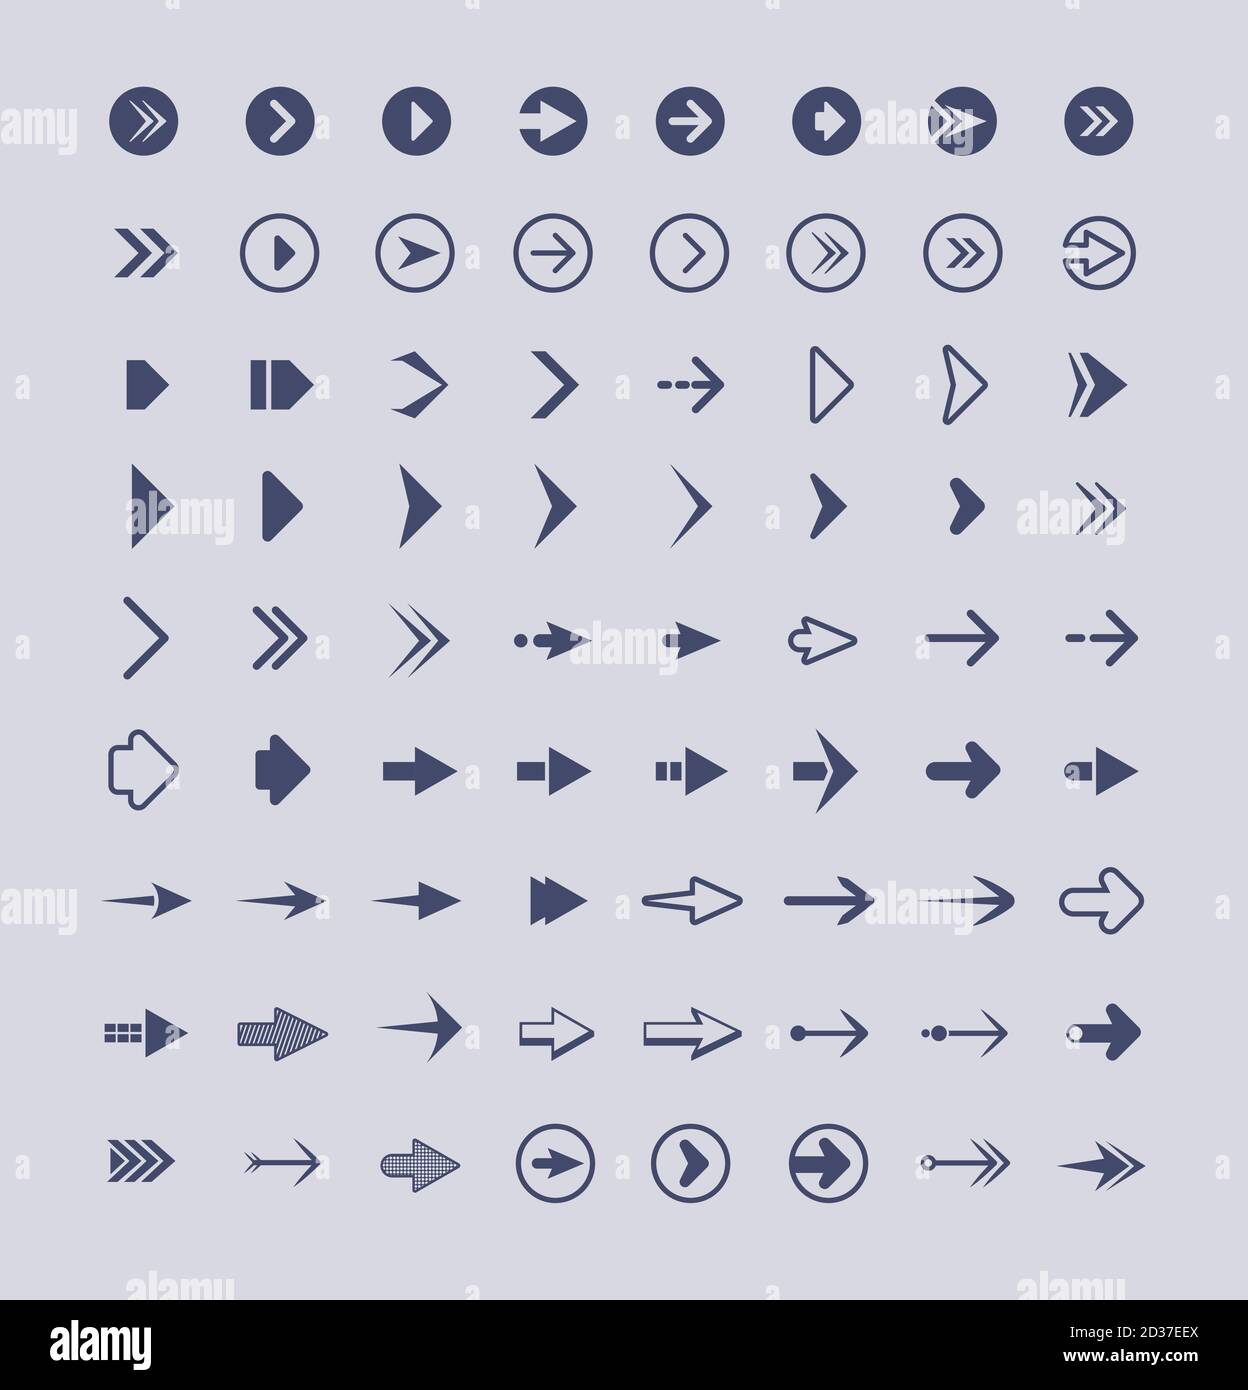 Frecce di direzione. Pulsanti web infografici segni e icone insieme di frecce vettoriali isolato Illustrazione Vettoriale